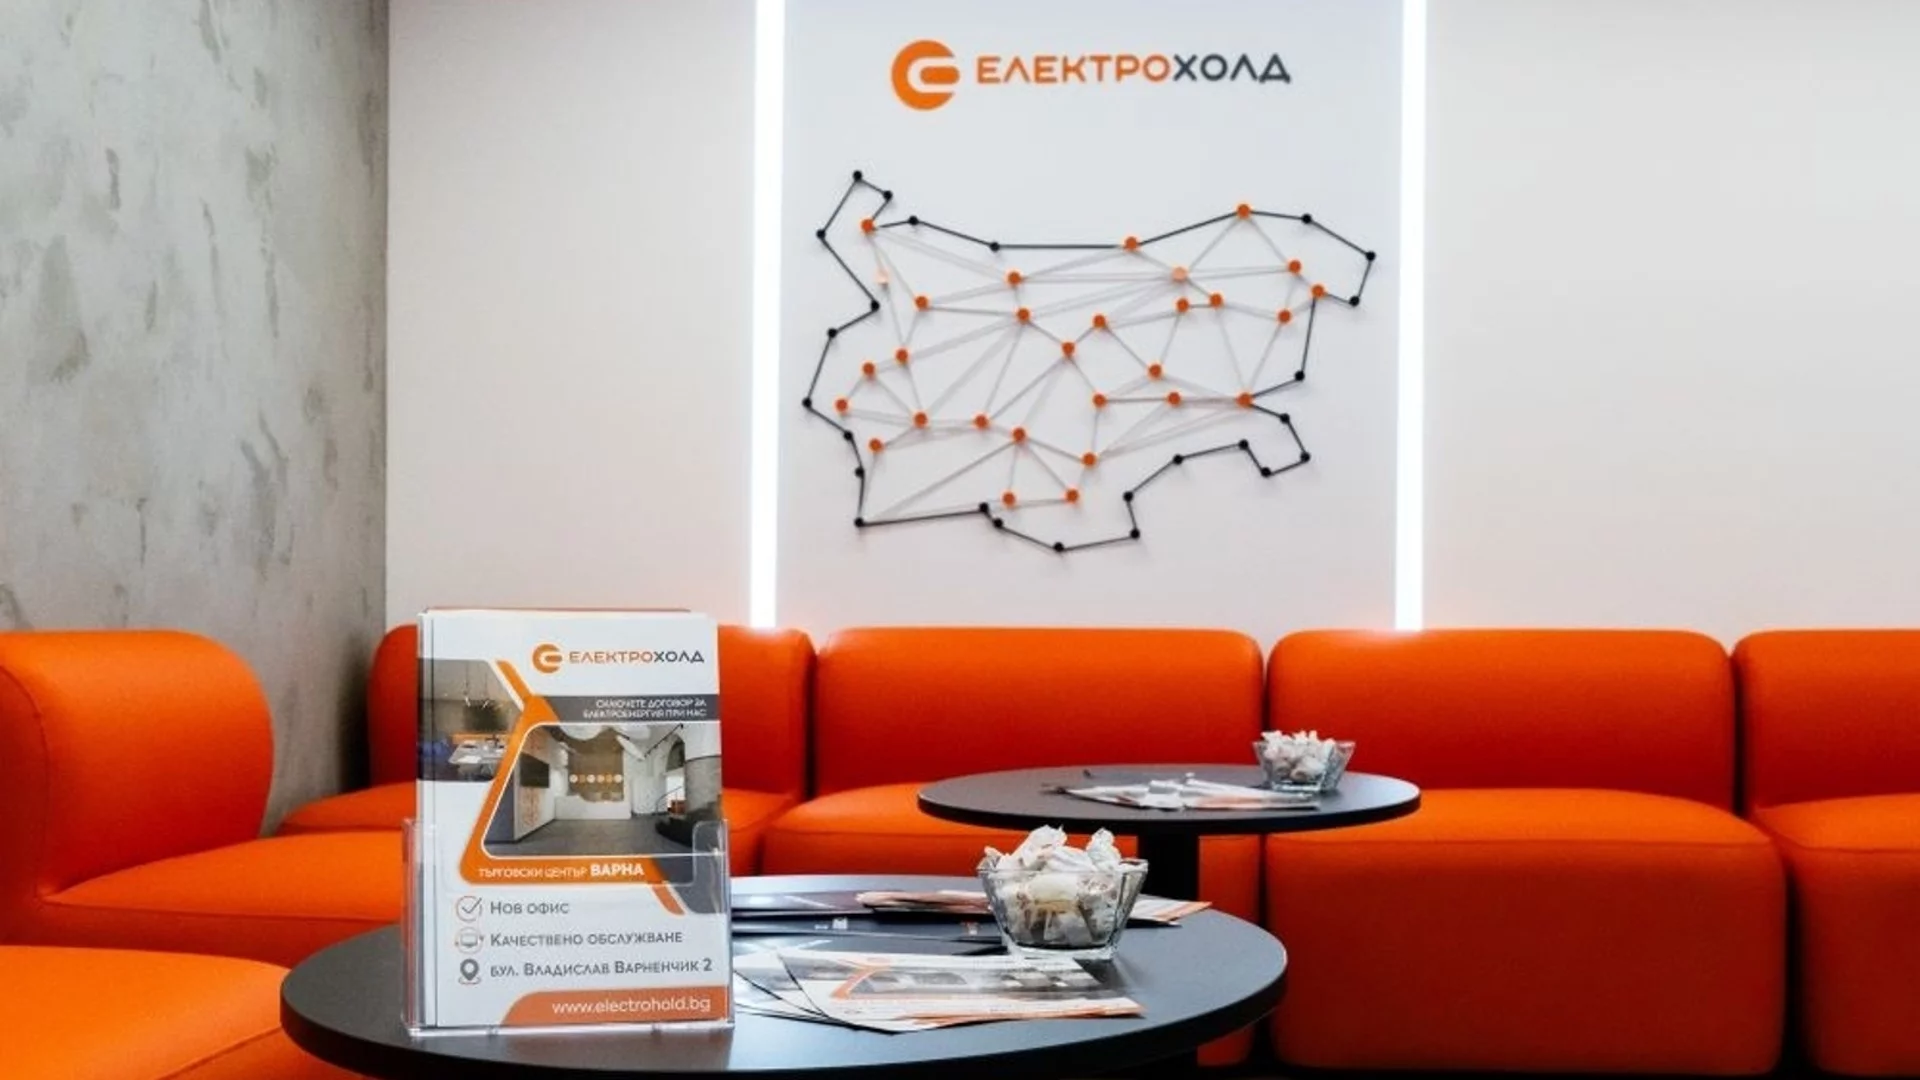 Електрохолд отвори клиентски център във Варна